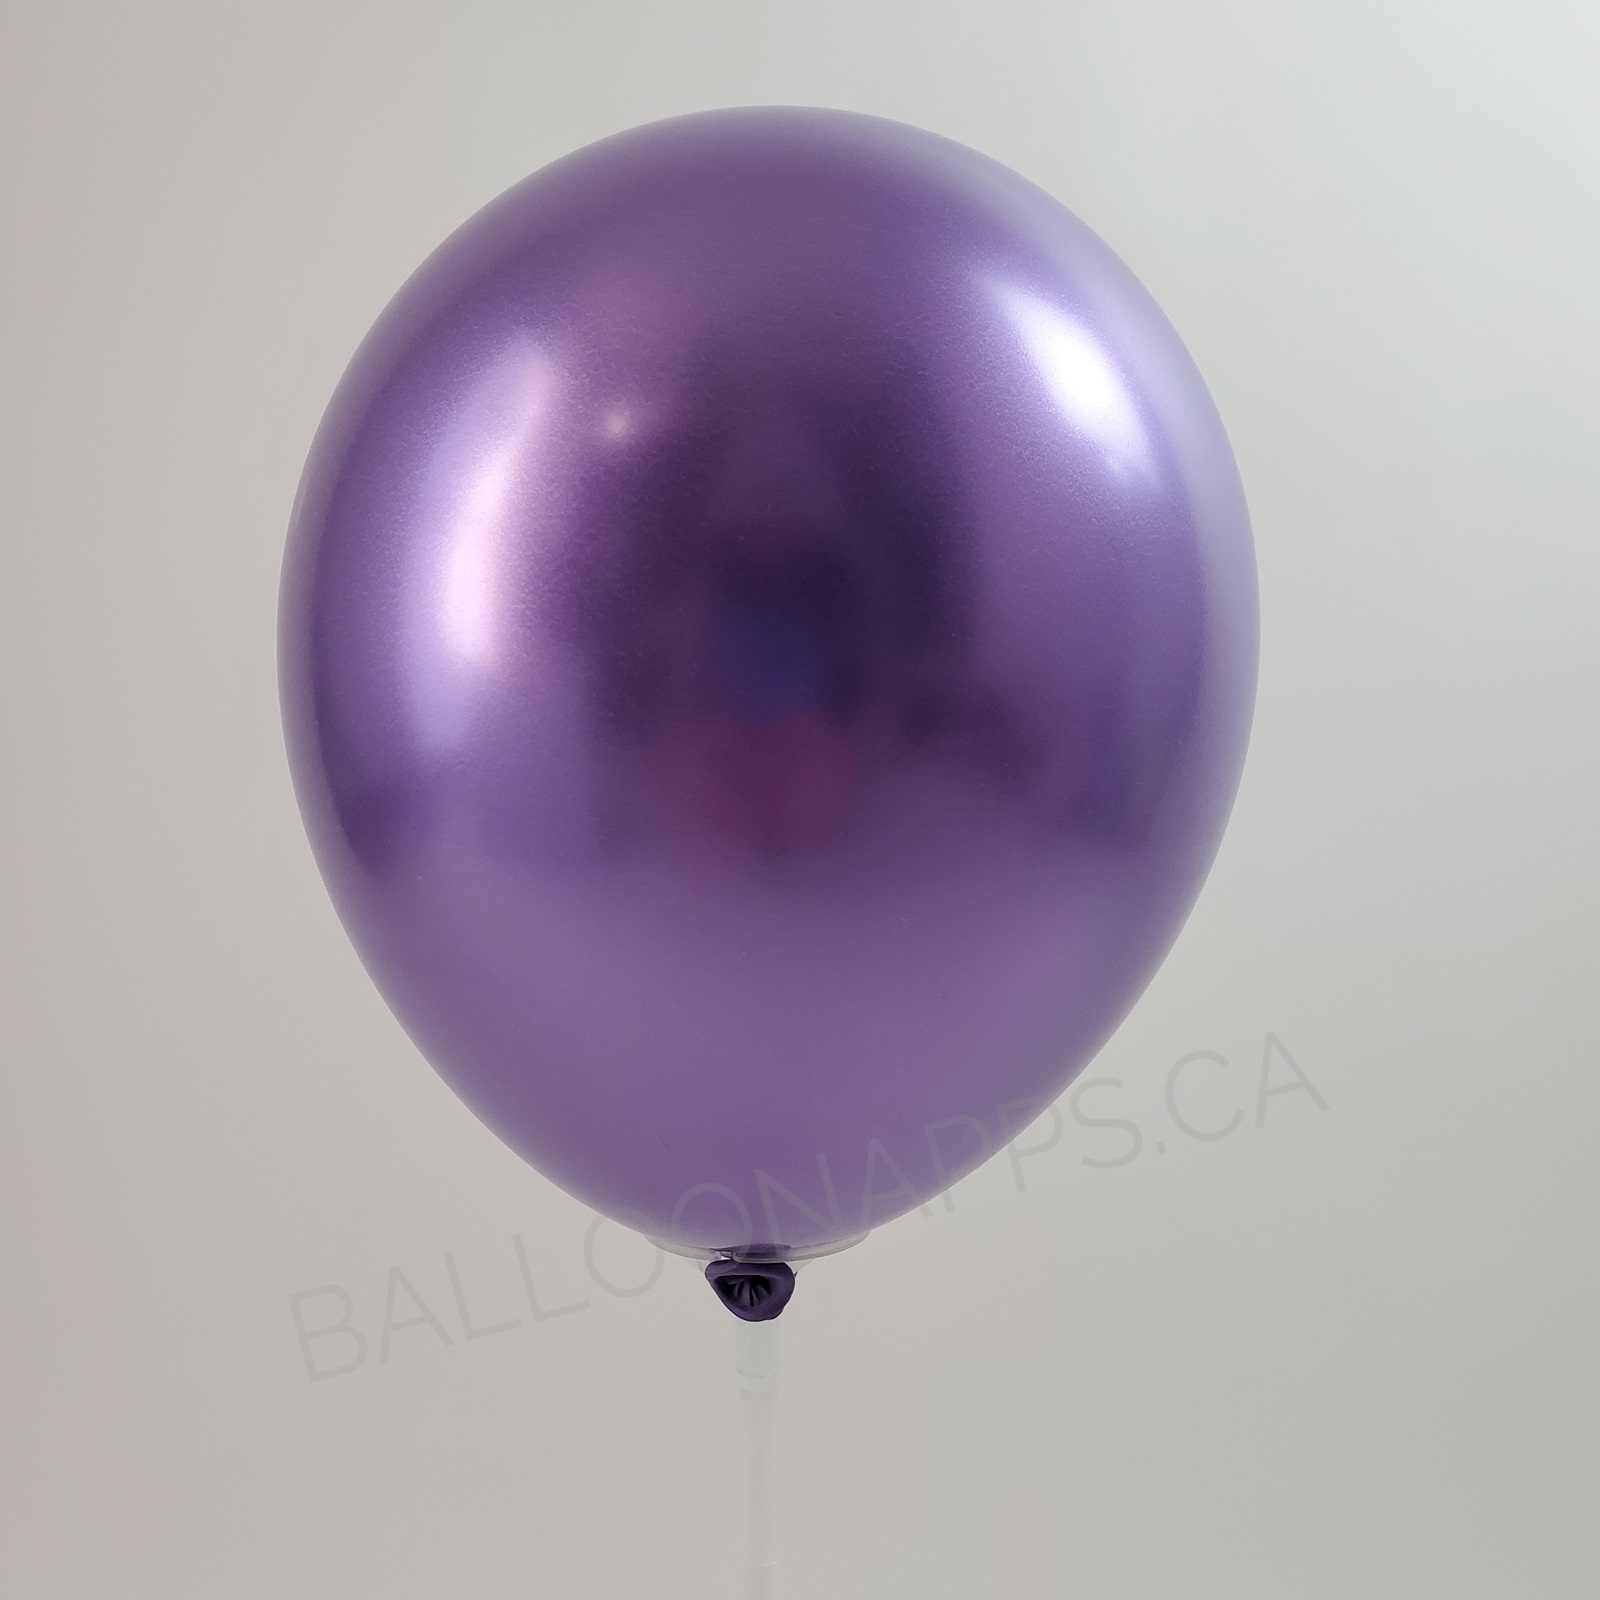 balloon texture 7